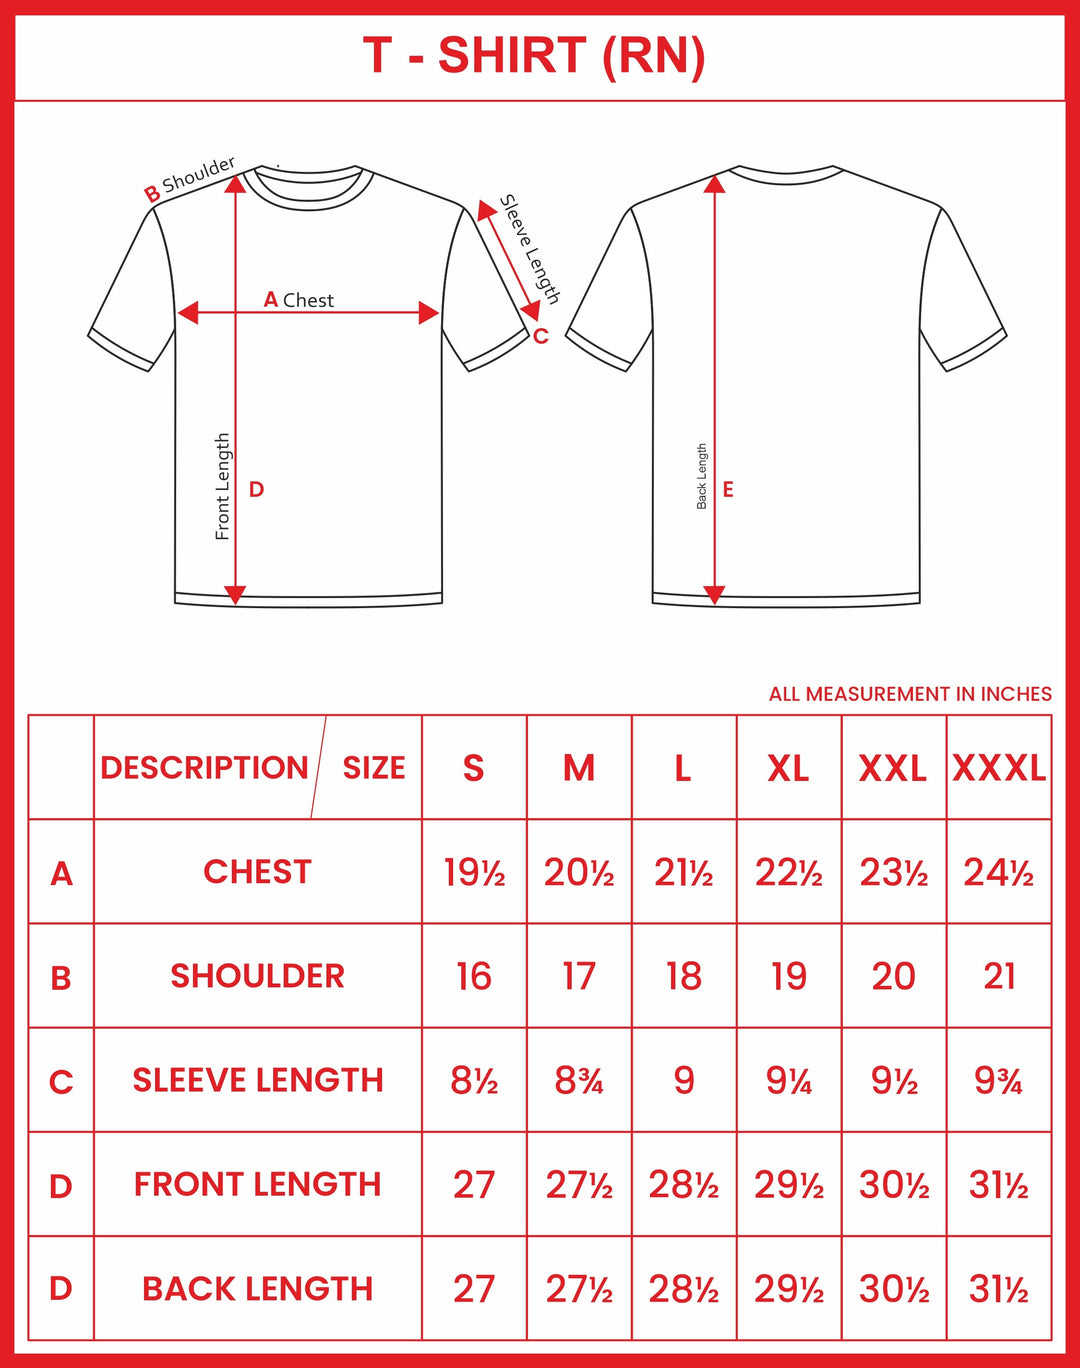 ARISER Navy Melange Color Round Neck Solid T-shirts For Men - TS25003